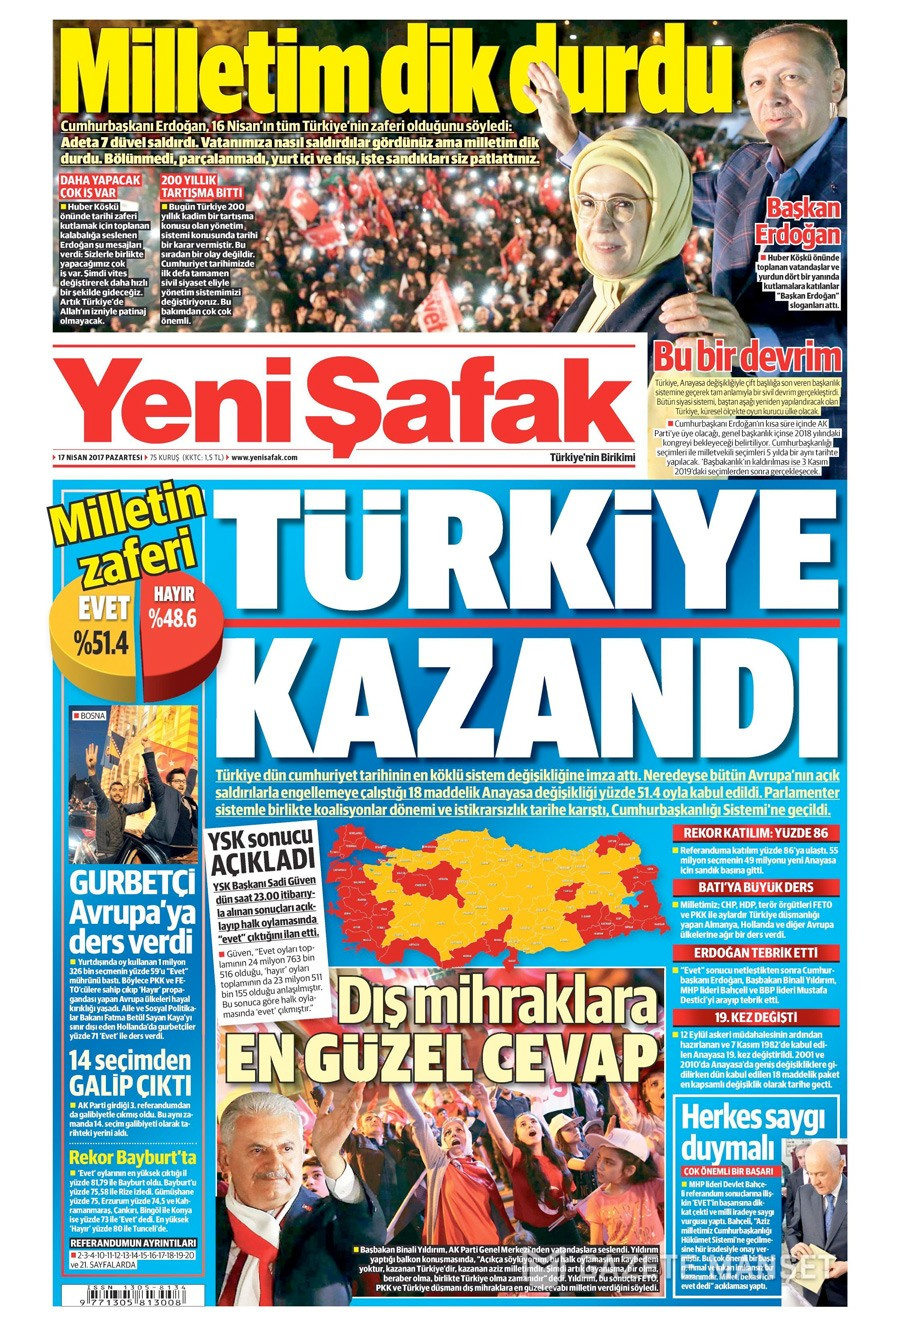 Gazete manşetleri 17 Nisan referandum için kim ne manşet attı!